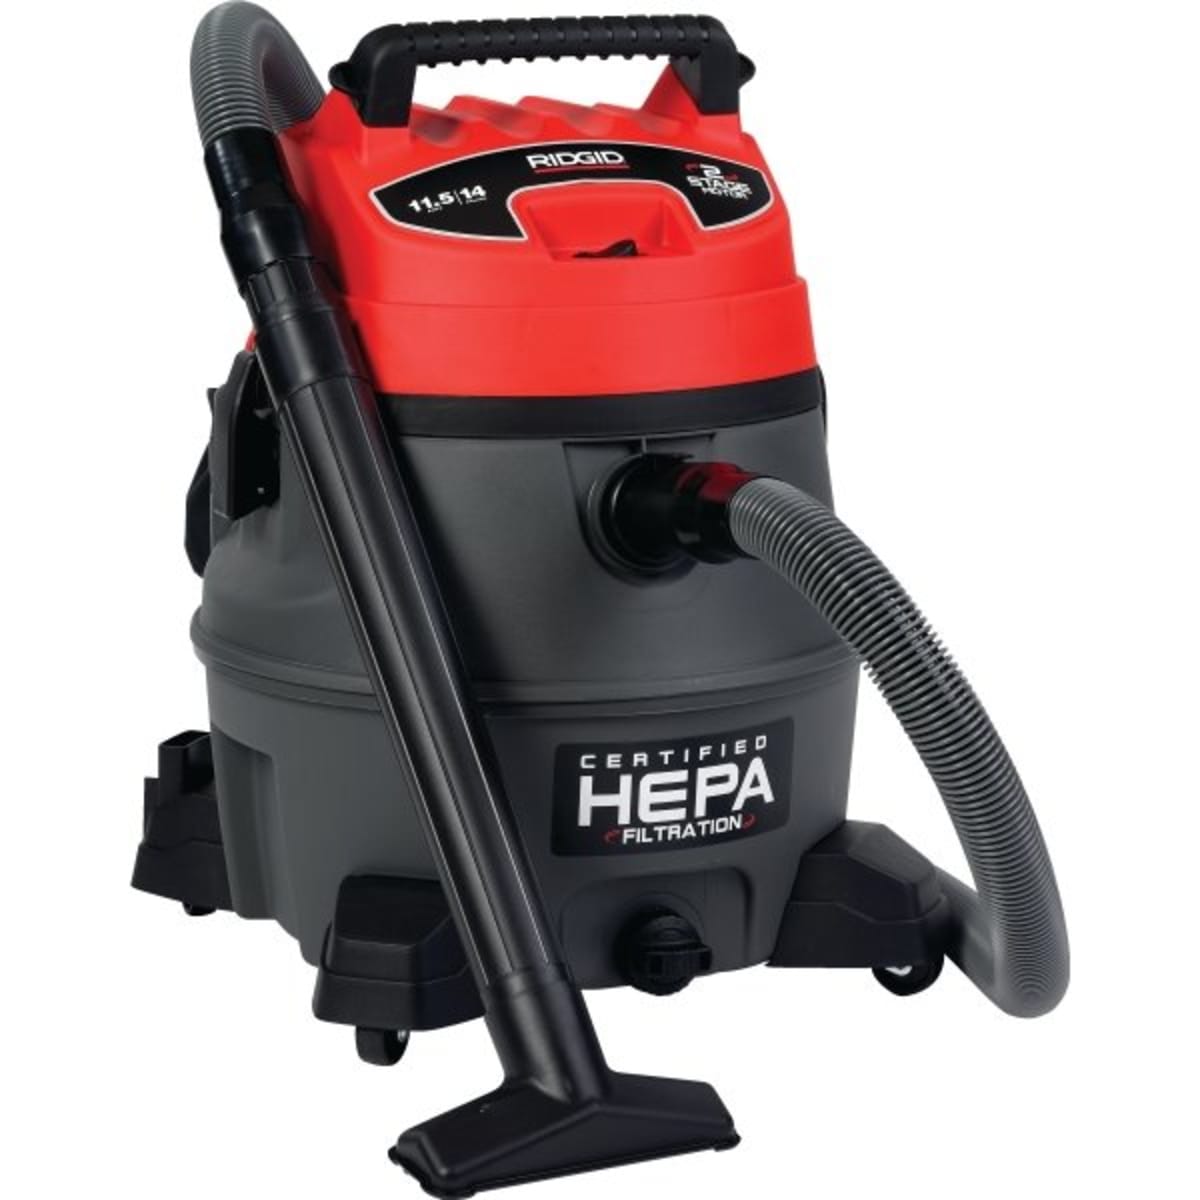 Ridgid 14 Gallon HEPA Wet/Dry Vacuum